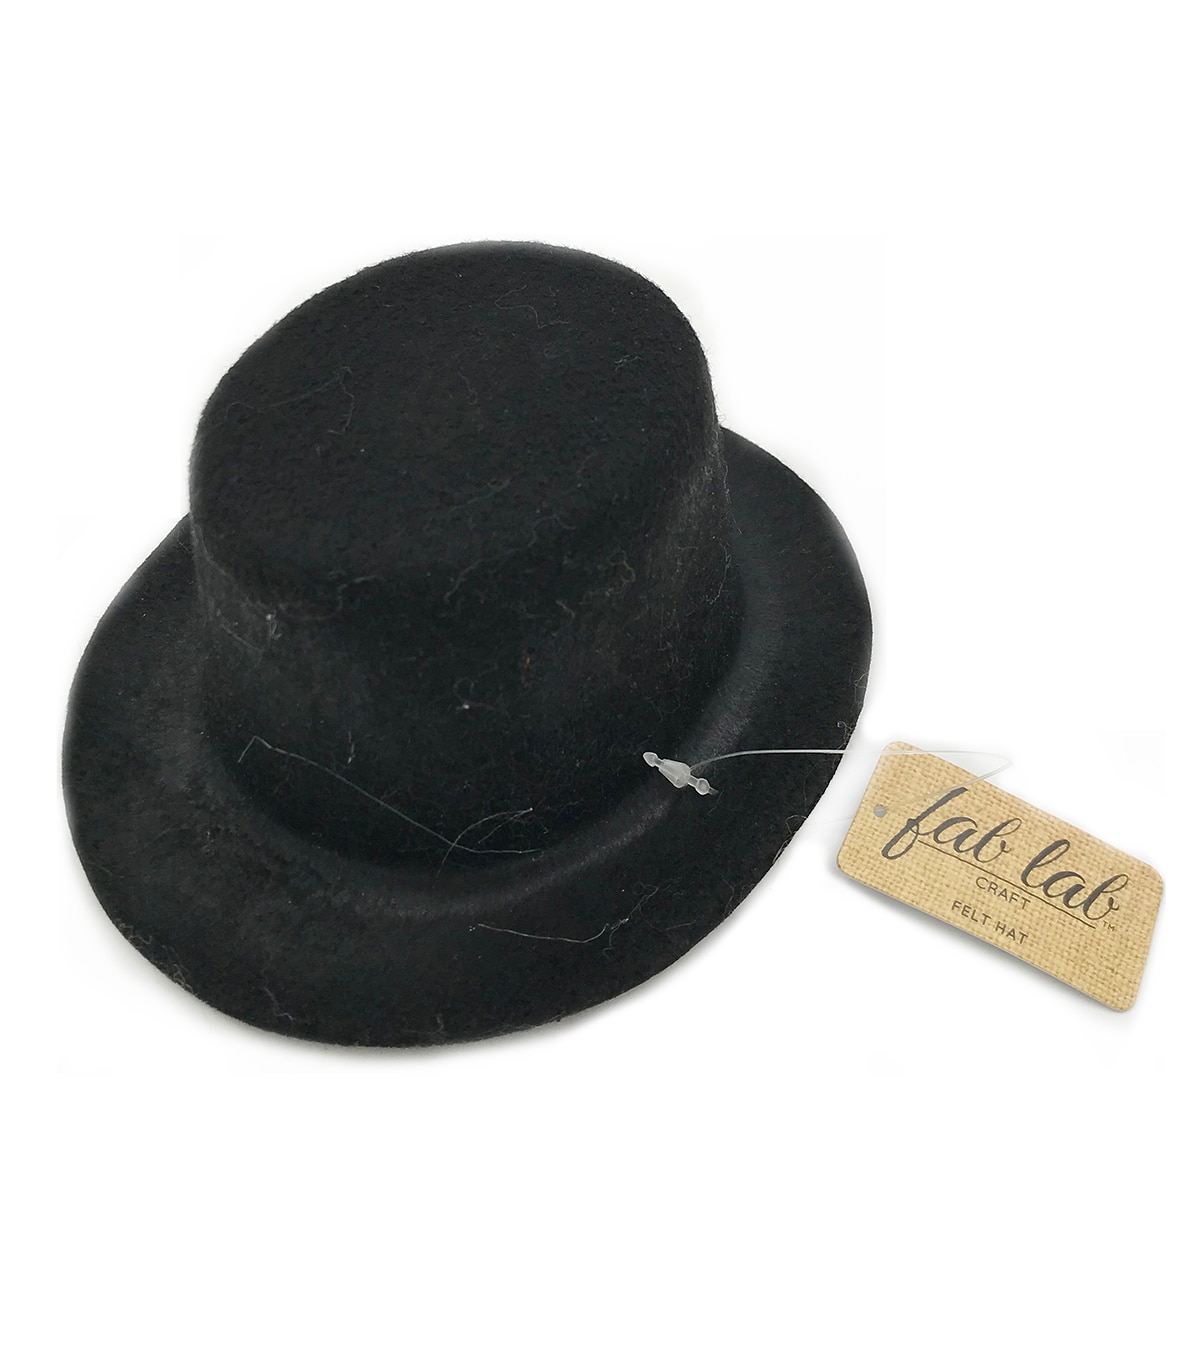 Twain Scala WF569 Brown Wool Felt Top Hat 5.5 Tall, black